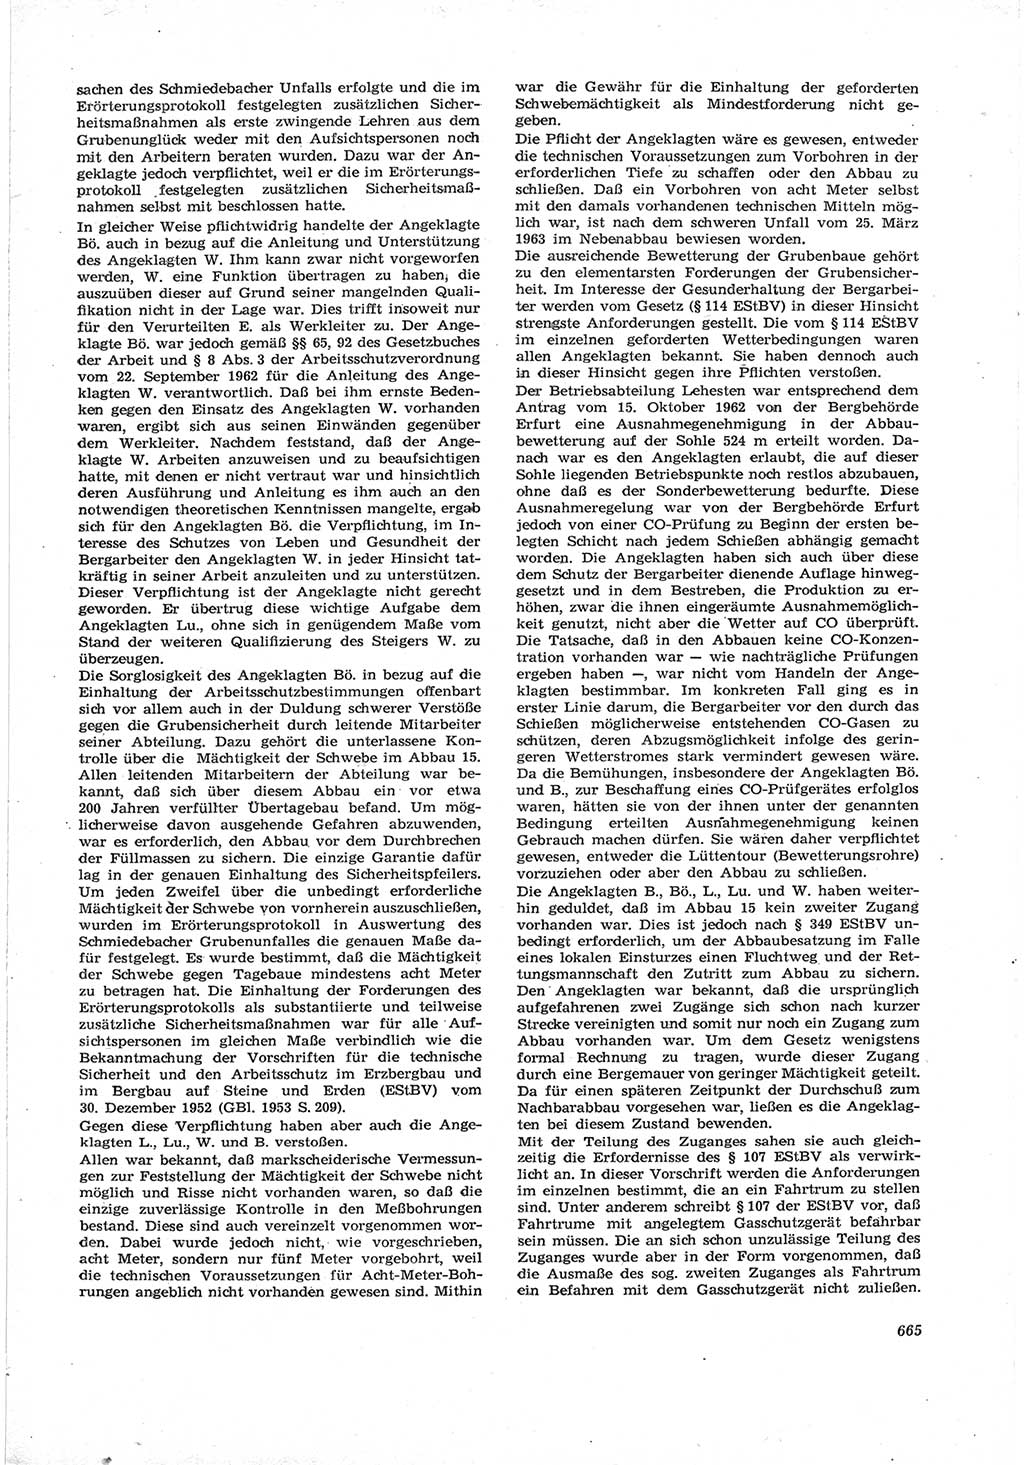 Neue Justiz (NJ), Zeitschrift für Recht und Rechtswissenschaft [Deutsche Demokratische Republik (DDR)], 17. Jahrgang 1963, Seite 665 (NJ DDR 1963, S. 665)